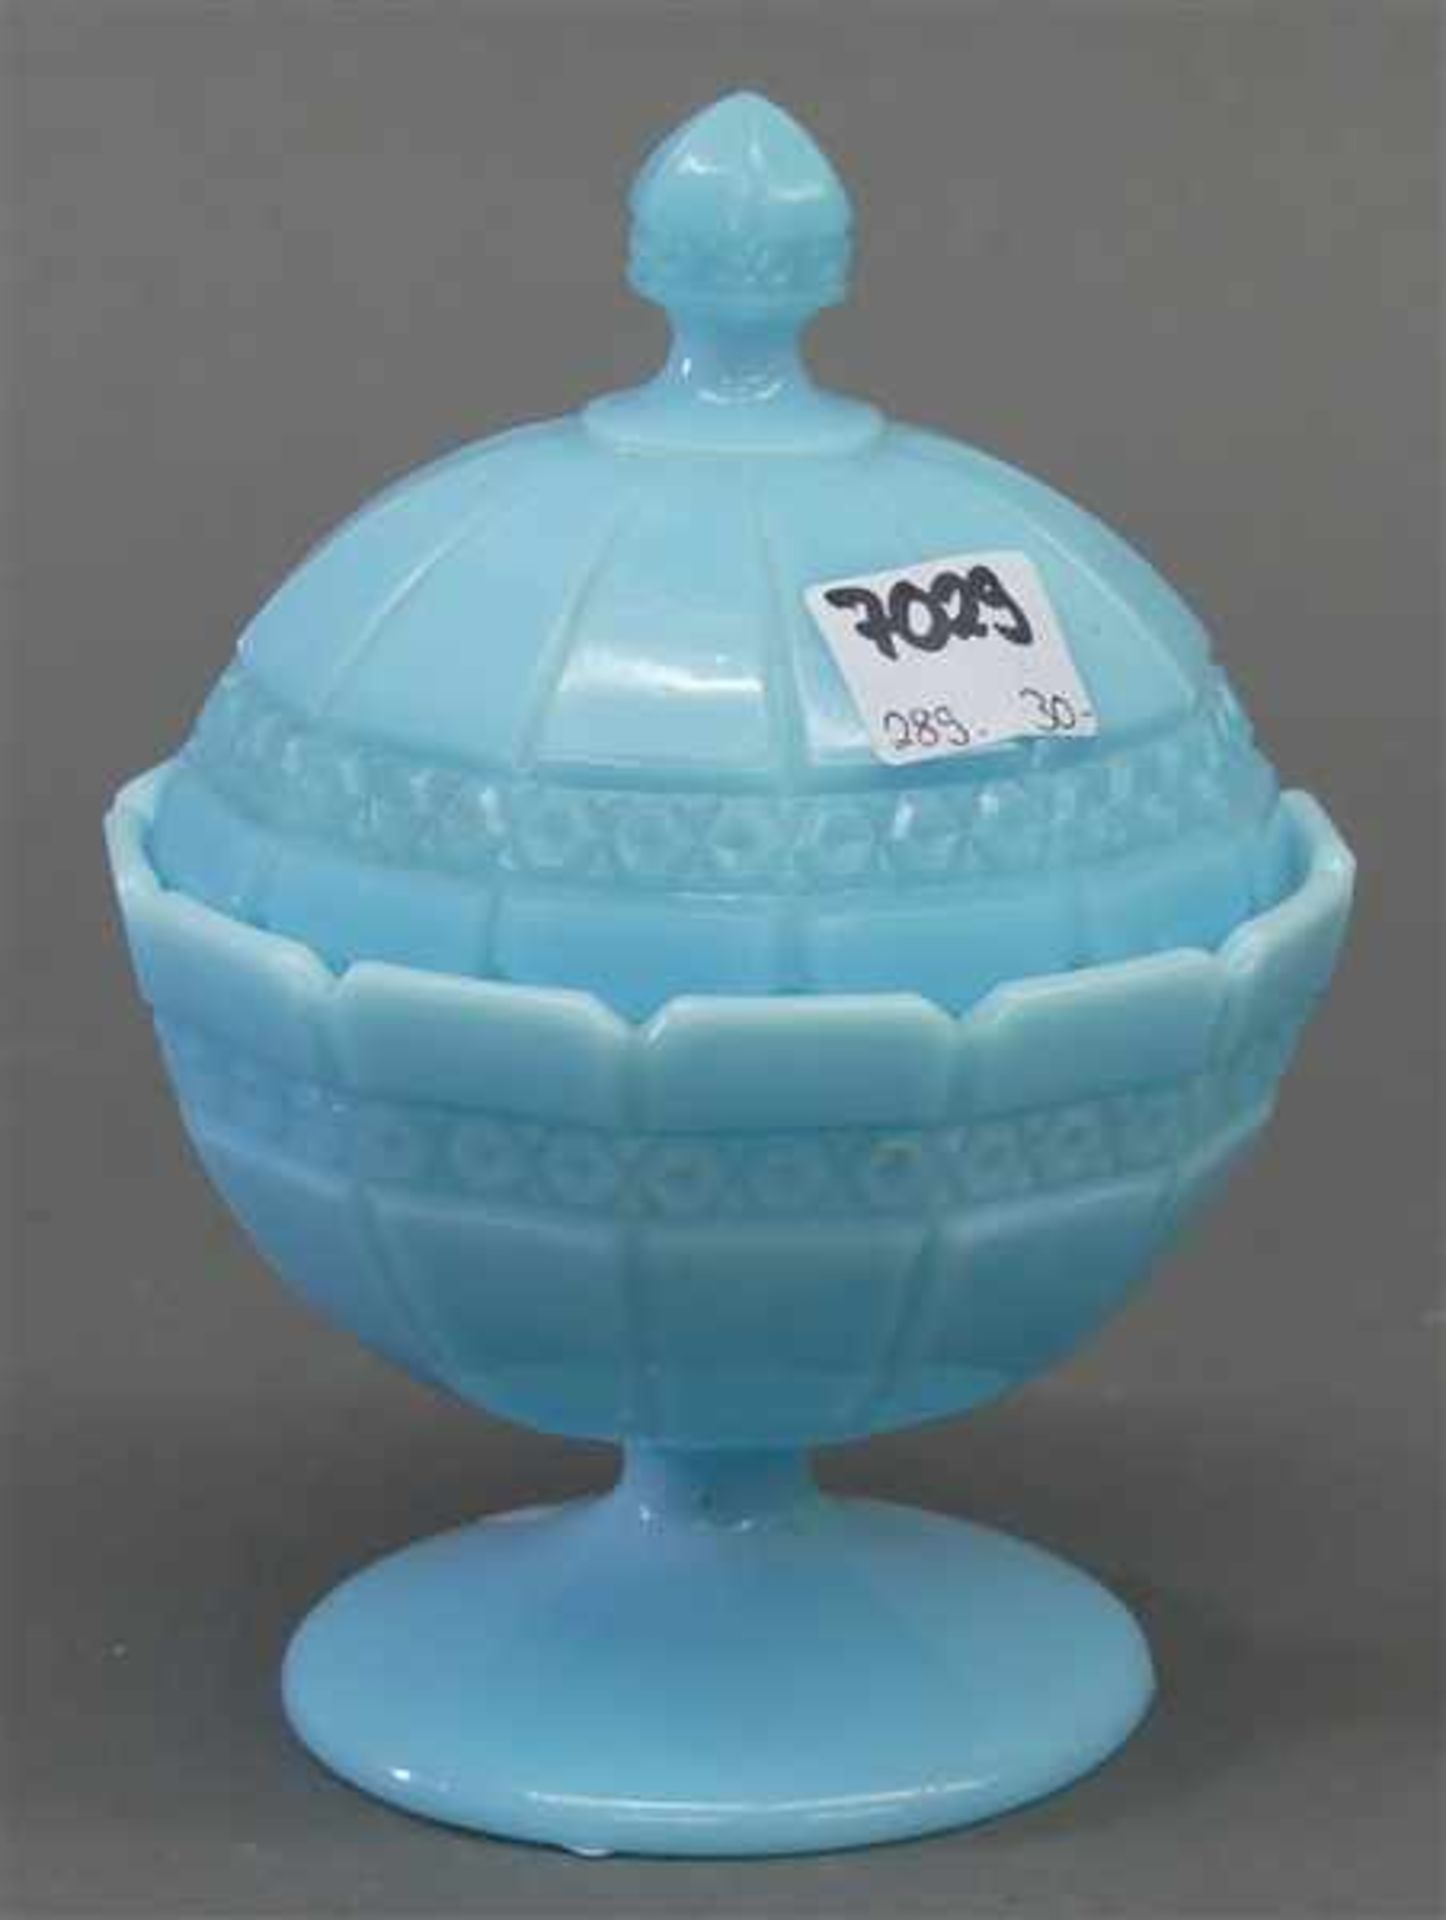 Zuckerdosehellblaues Milchglas, 20. Jh., h 16 cm, gepresst,- - -20.00 % buyer's premium on the